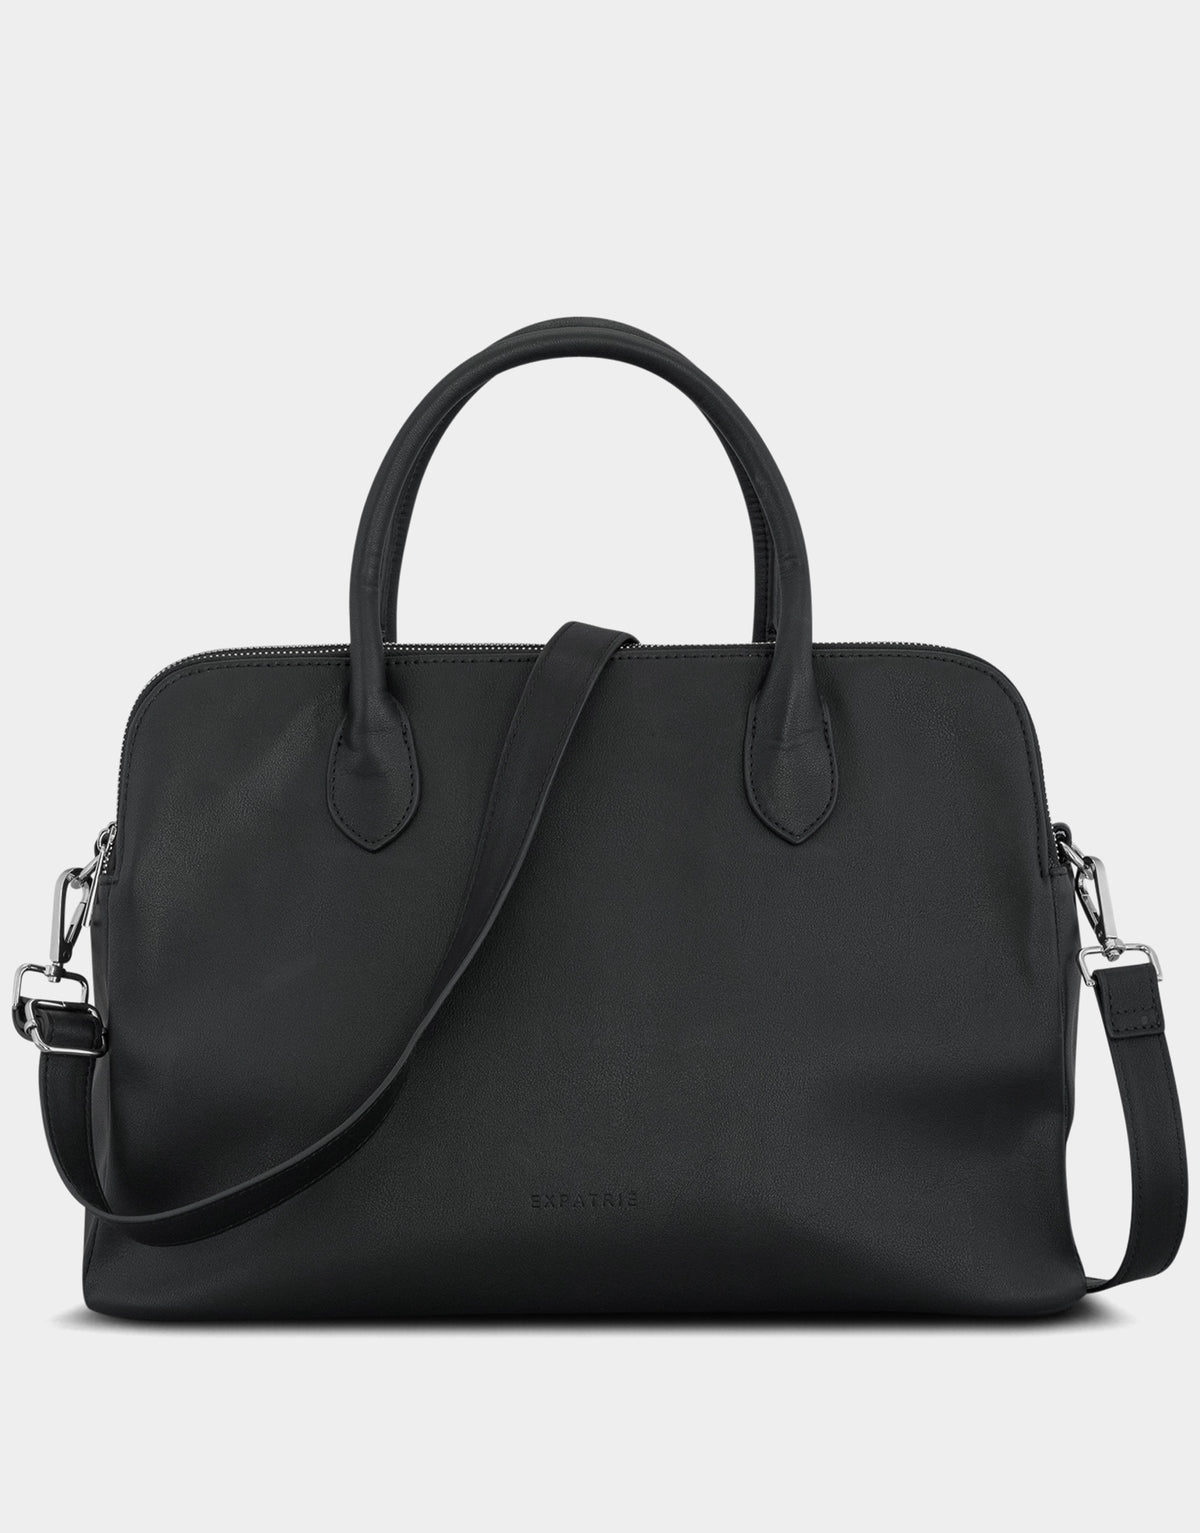 Business Handbag Odette